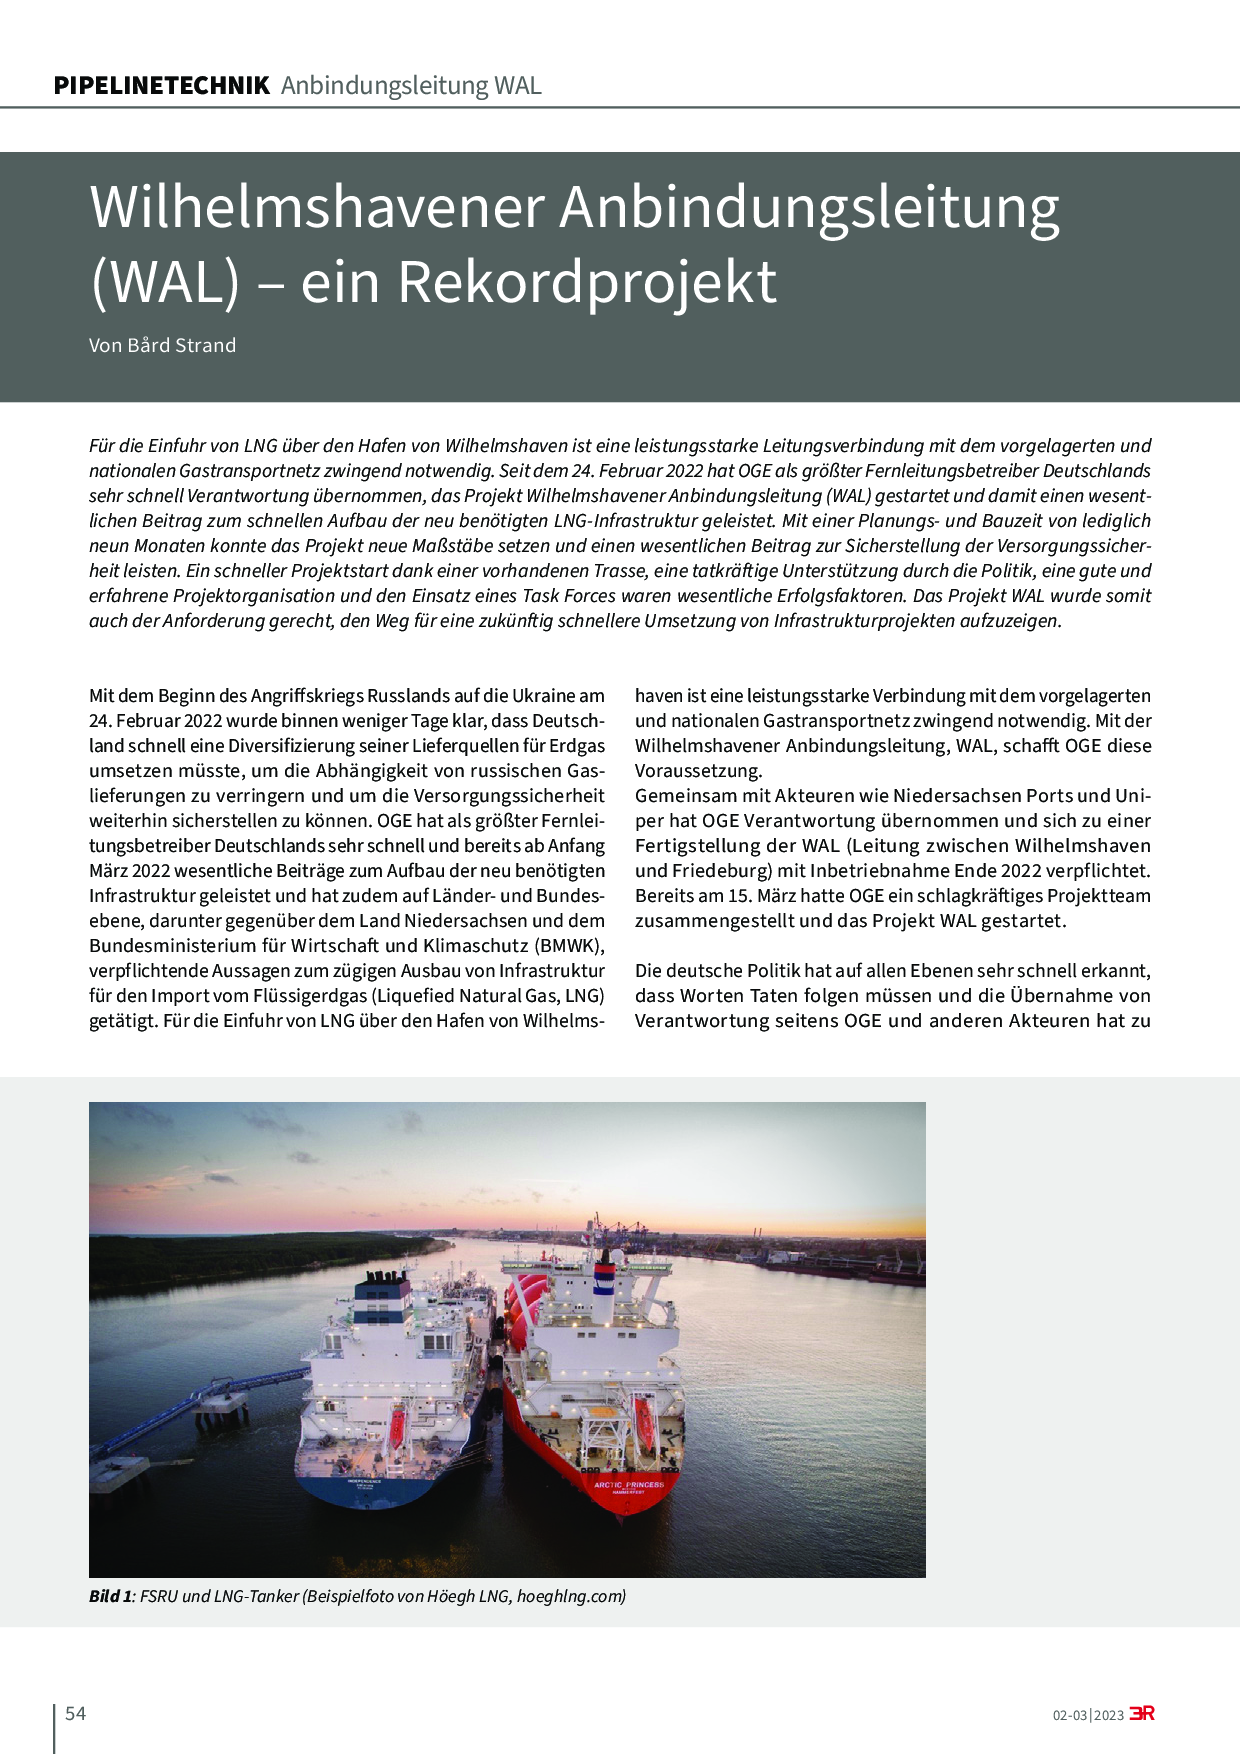 Wilhelmshavener Anbindungsleitung (WAL) – ein Rekordprojekt